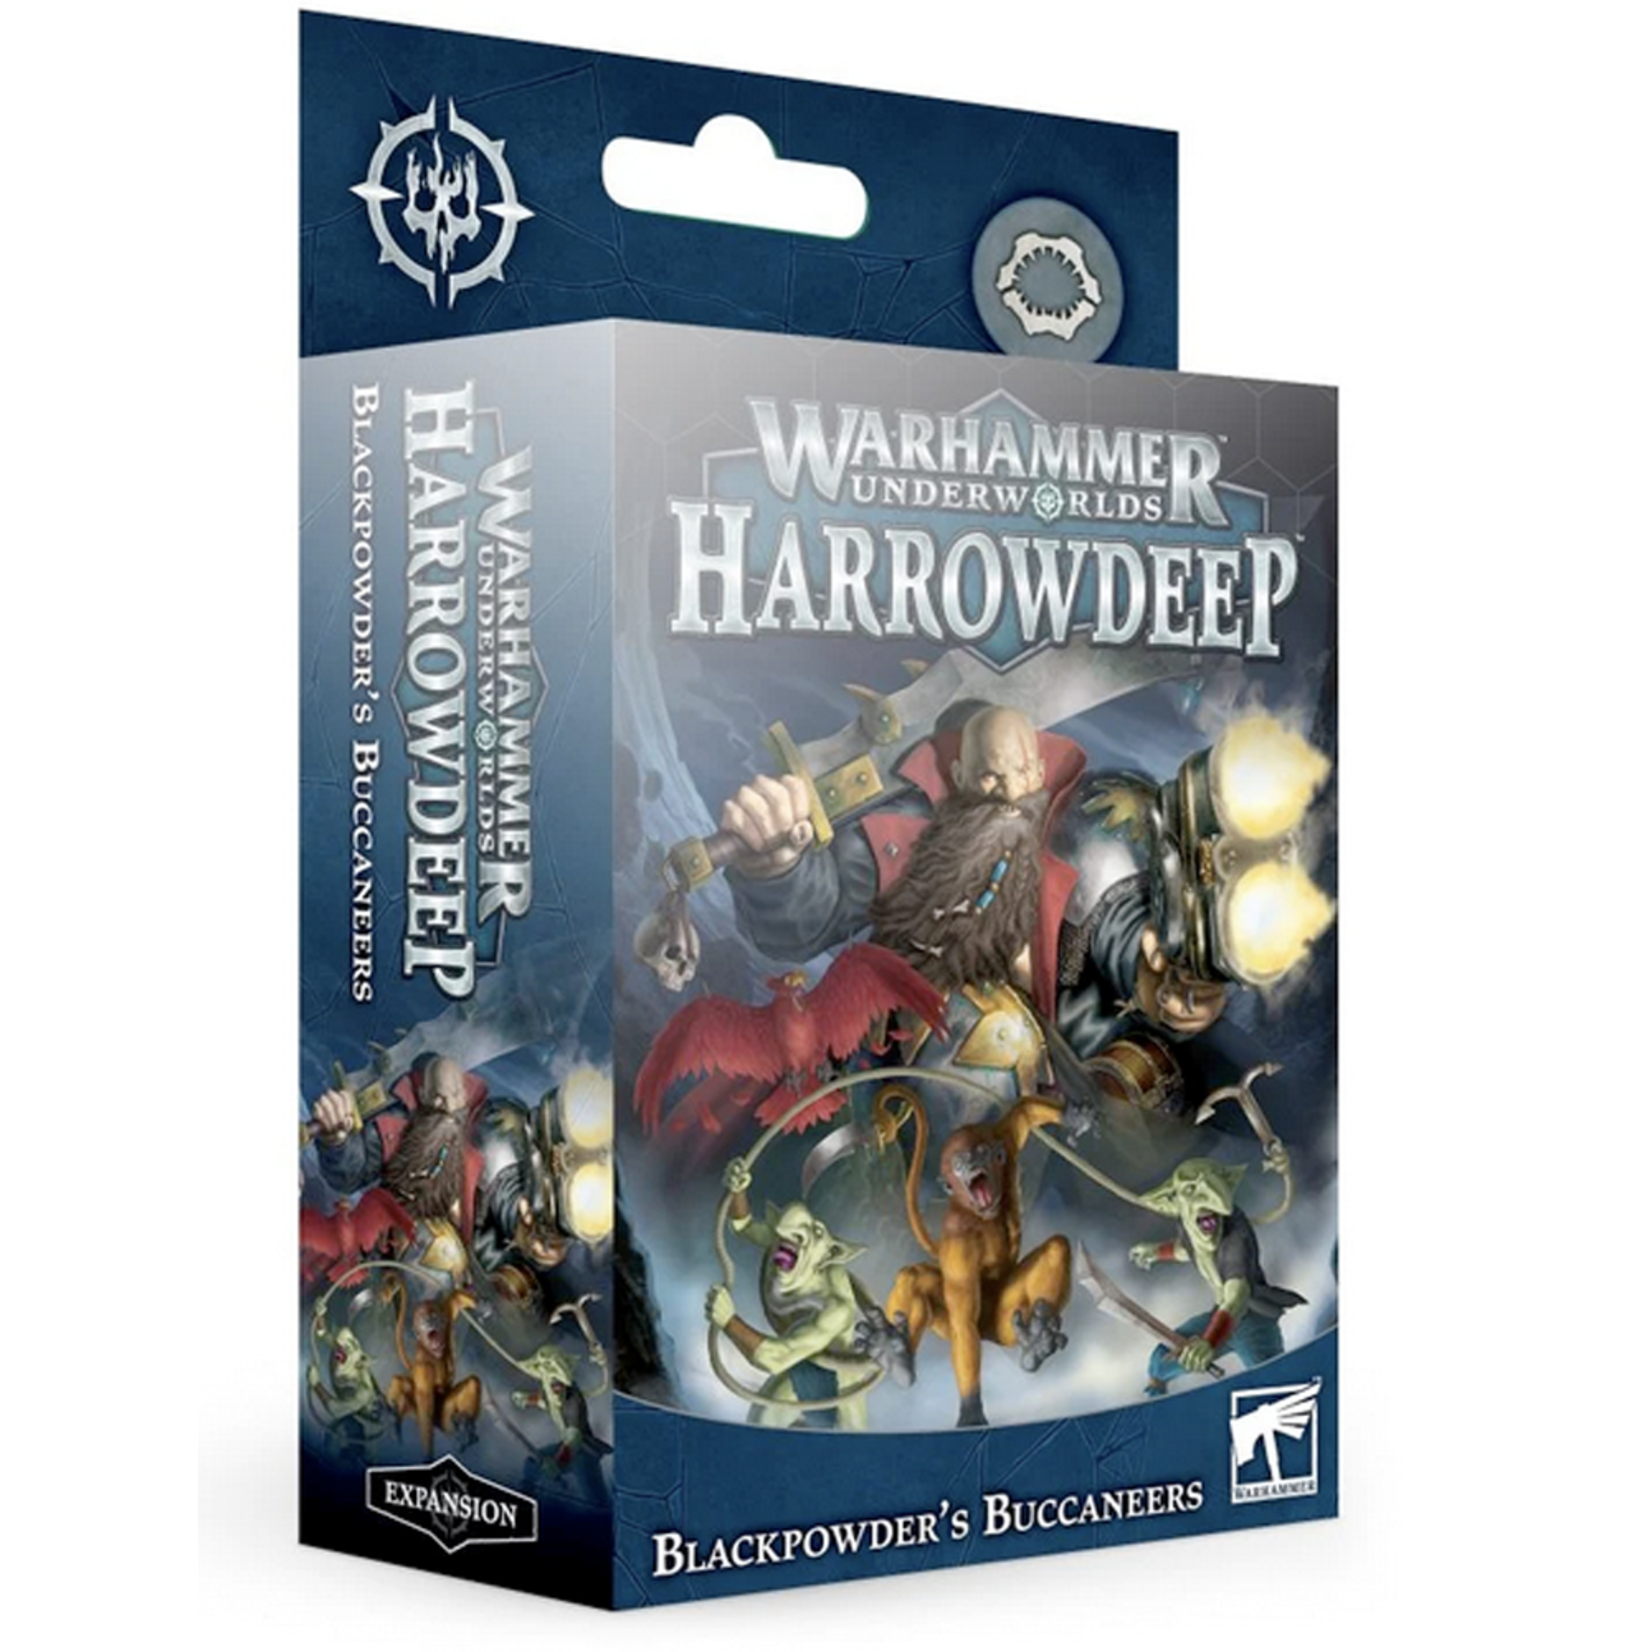 Underworlds Harrowdeep Blackpowder's Buccaneers